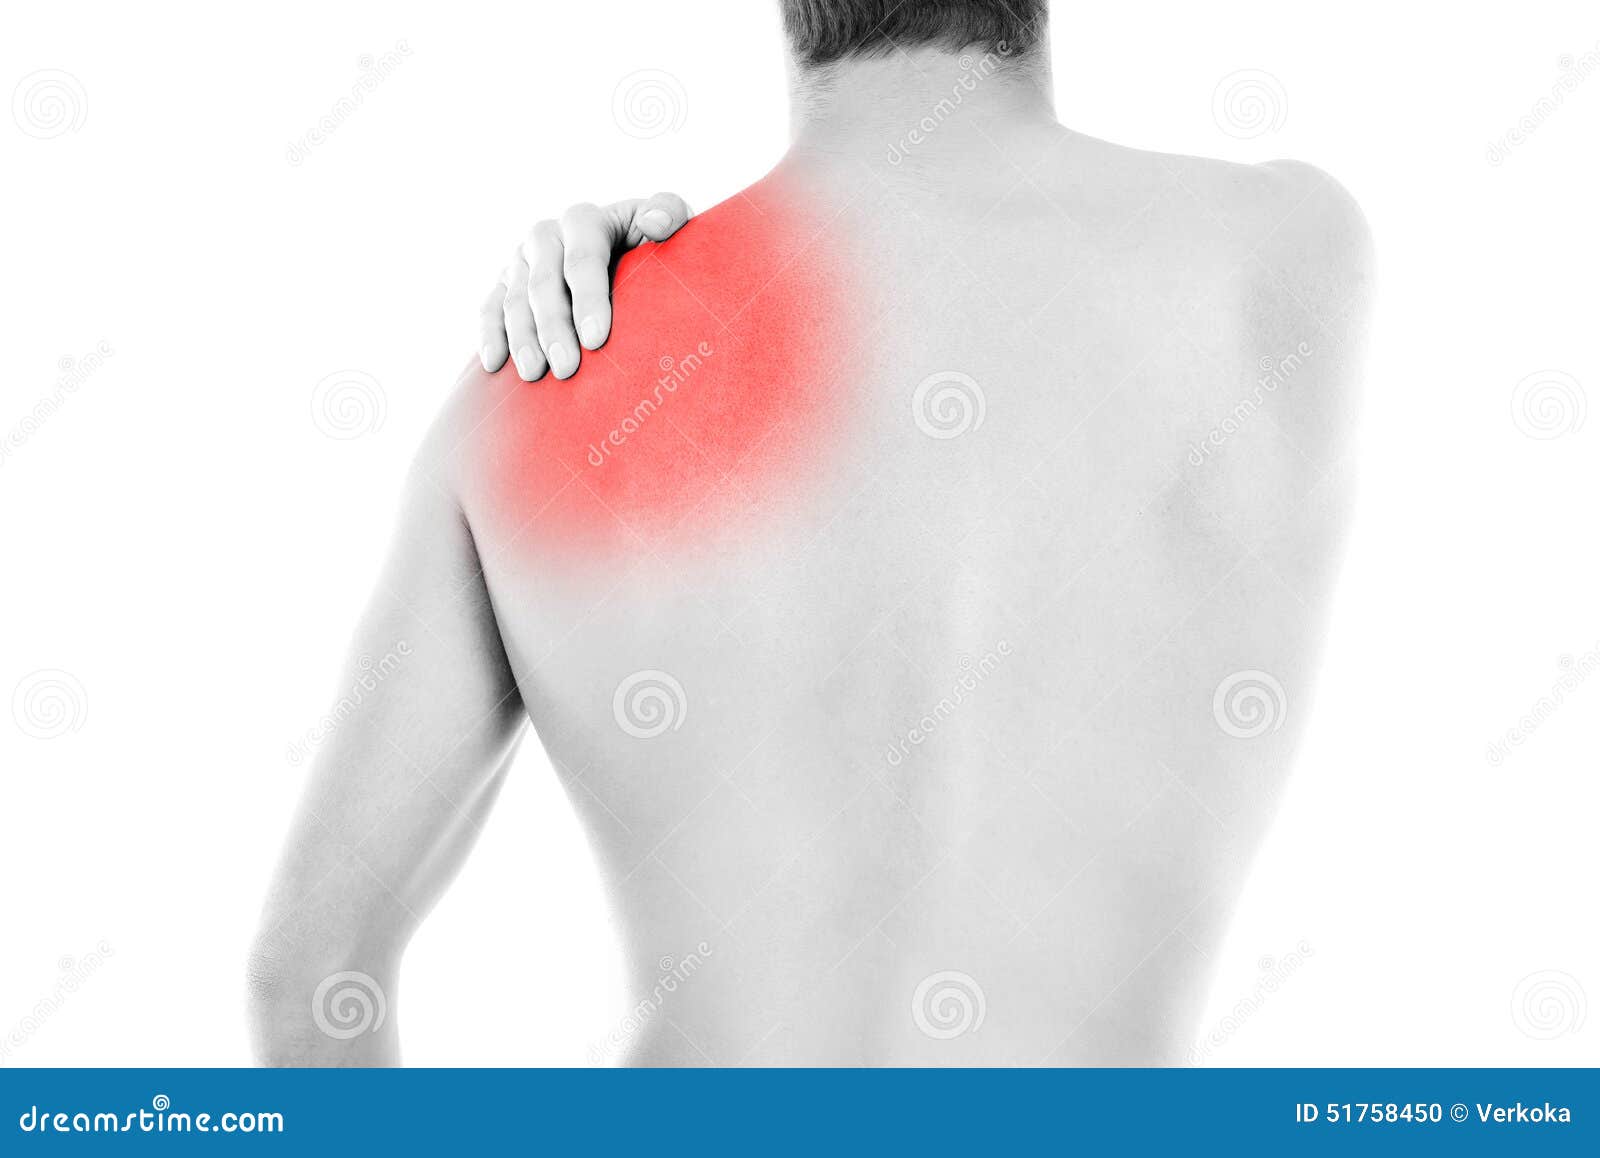 Ударилась спиной болит. Тест на боль в плече. Не могу завести руку за спину боль в плече.